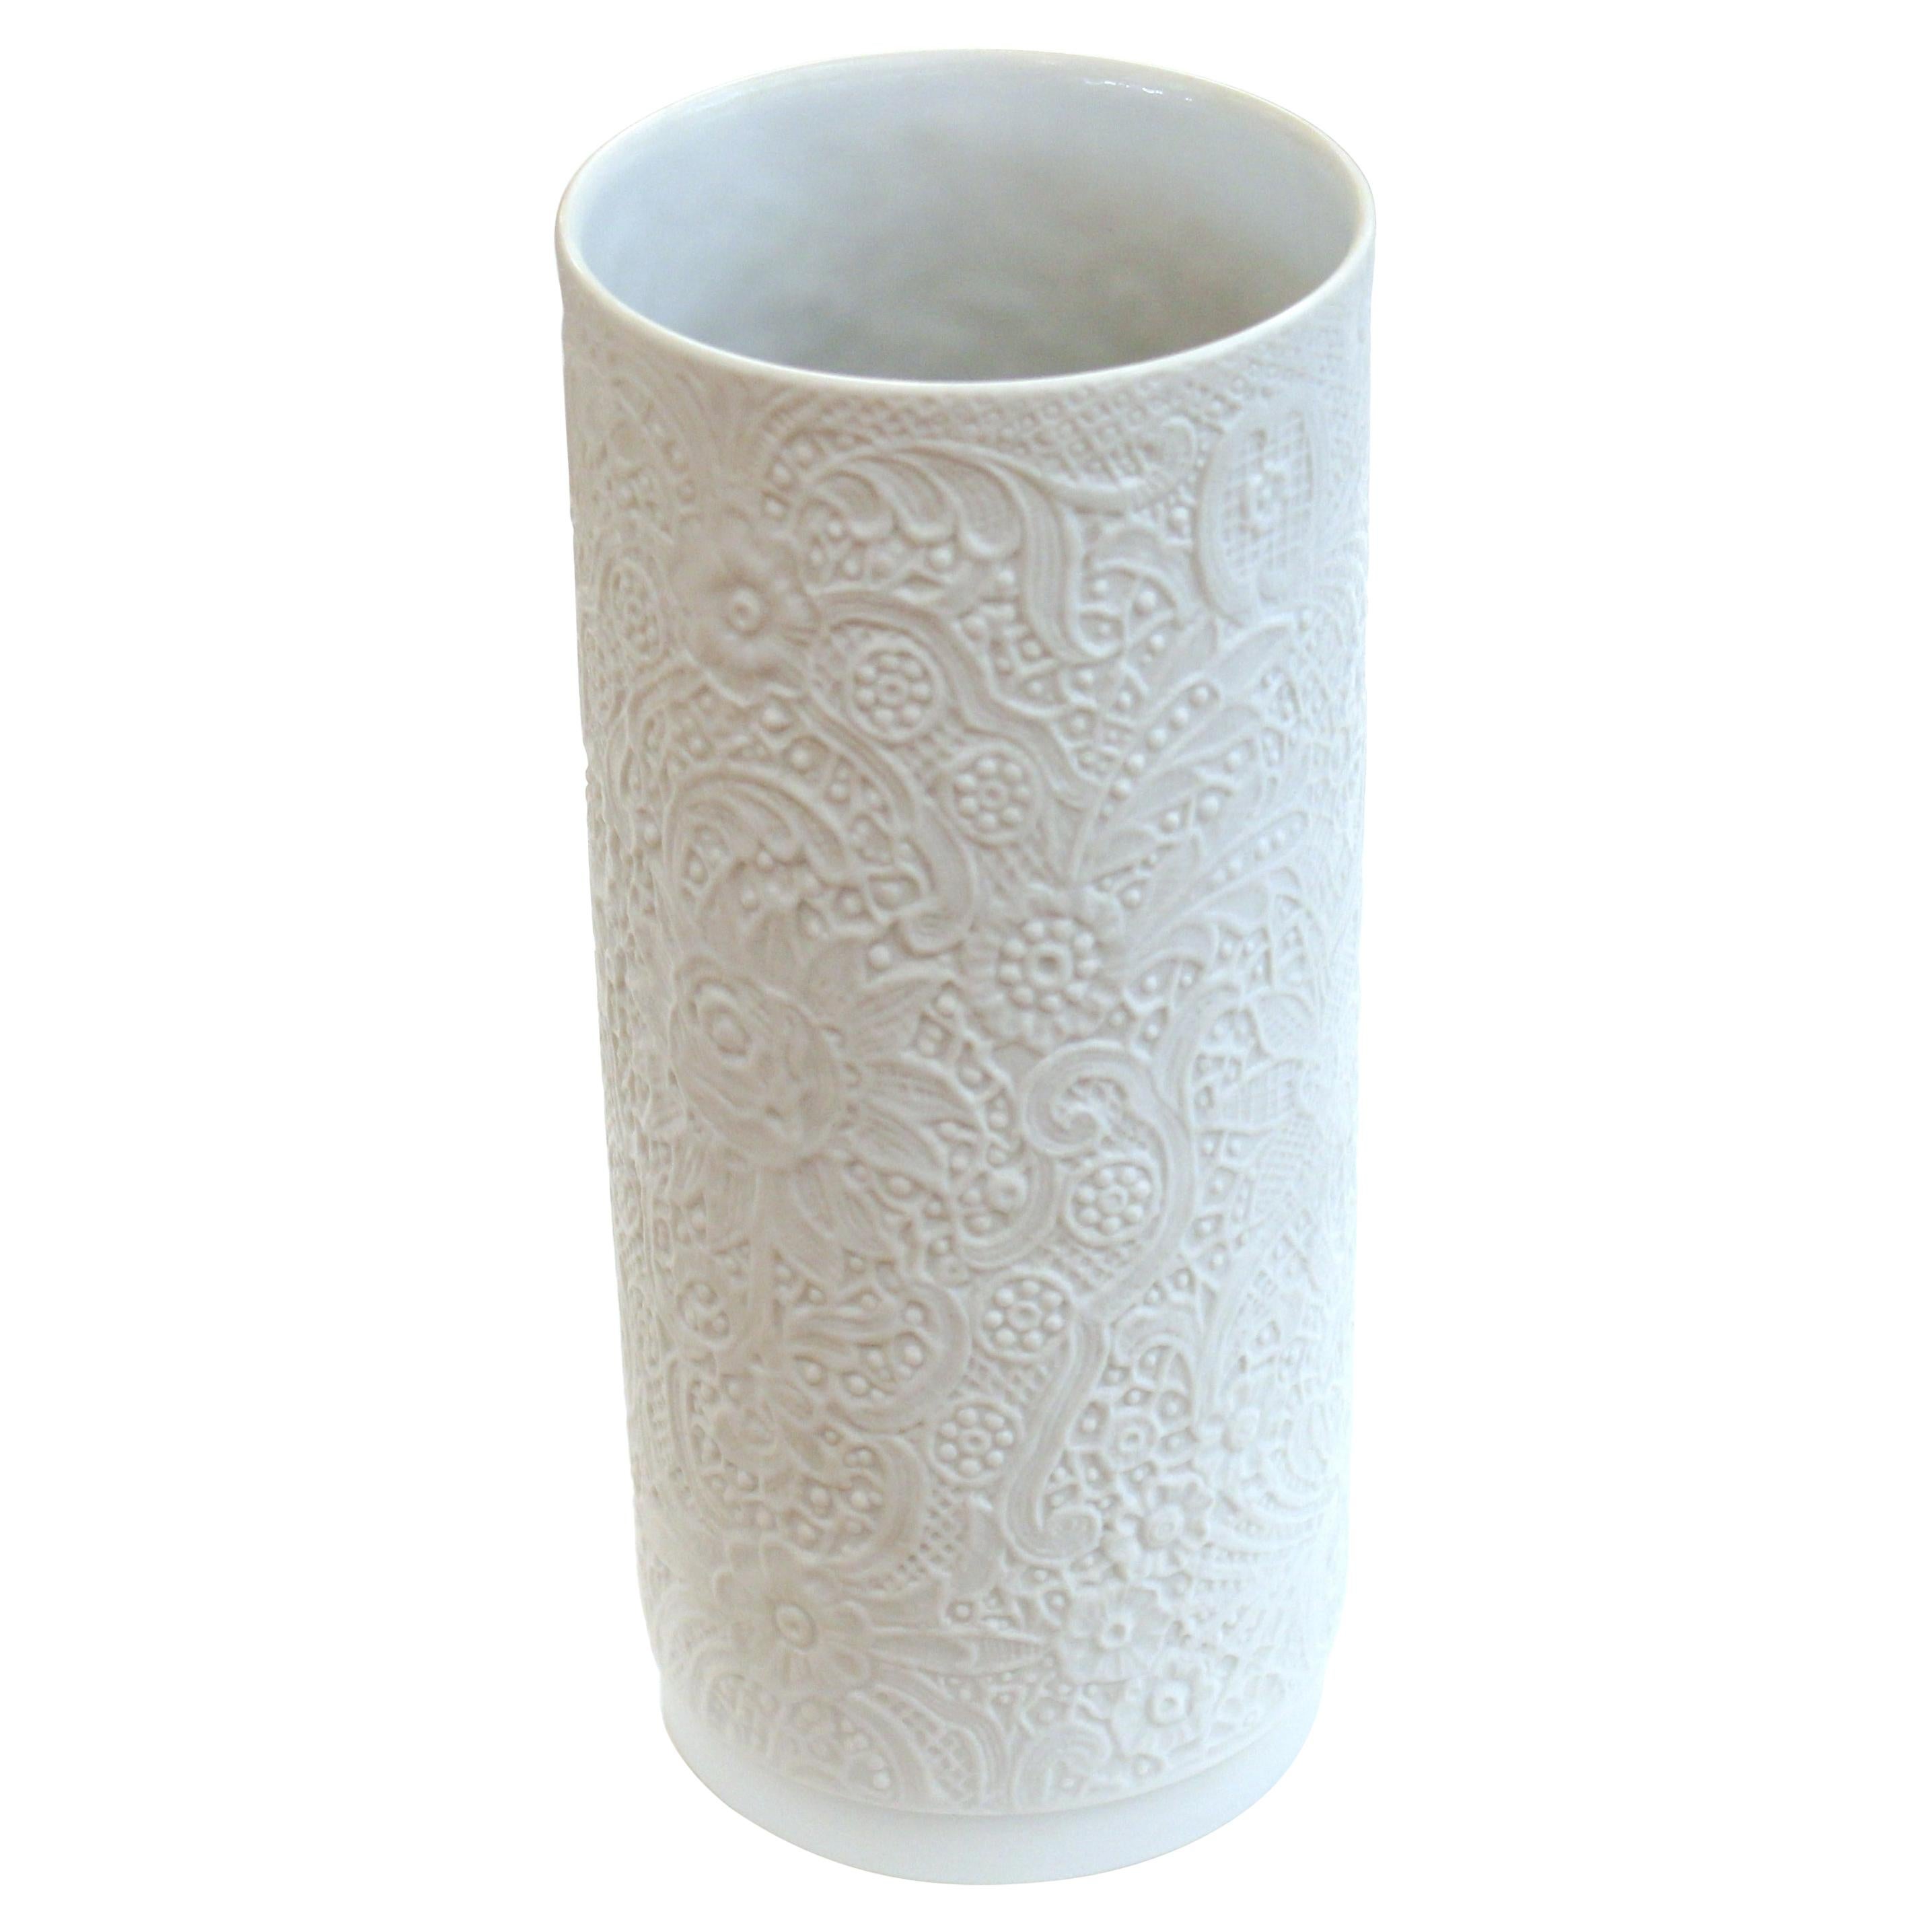 Rosenthal White Porcelain Bisque Lace Design Vase